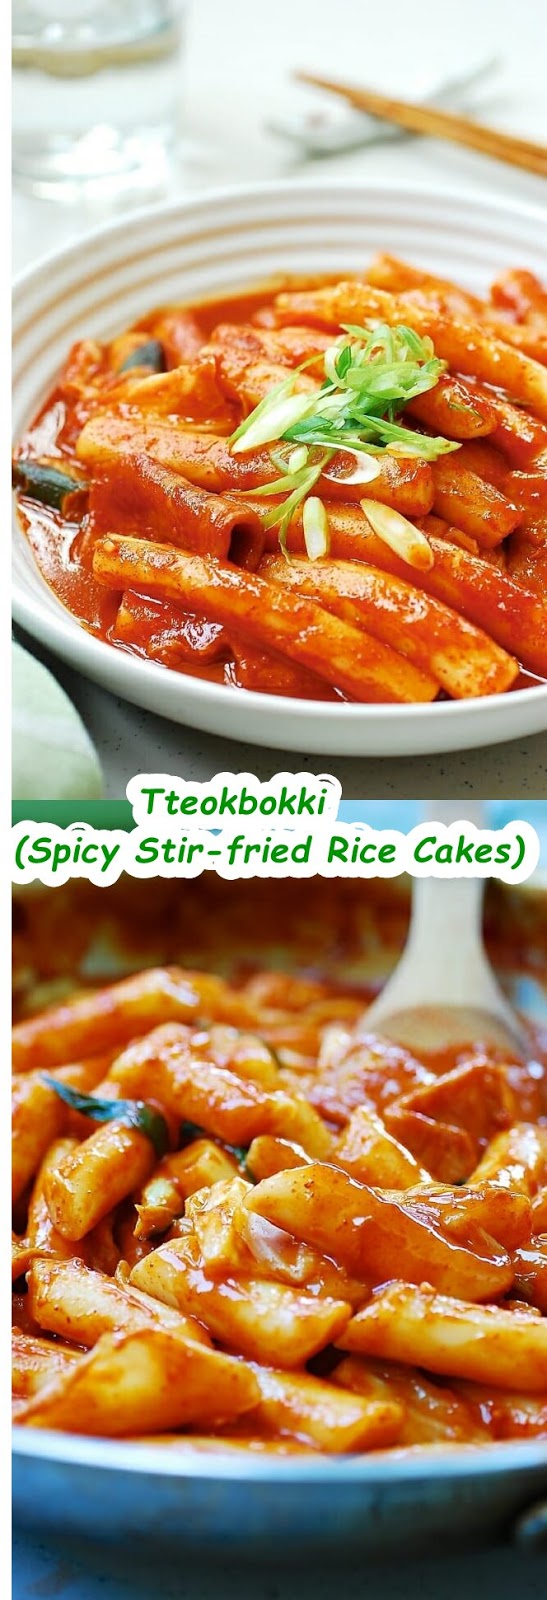 Tteokbokki (Spicy Stir-fried Rice Cakes)